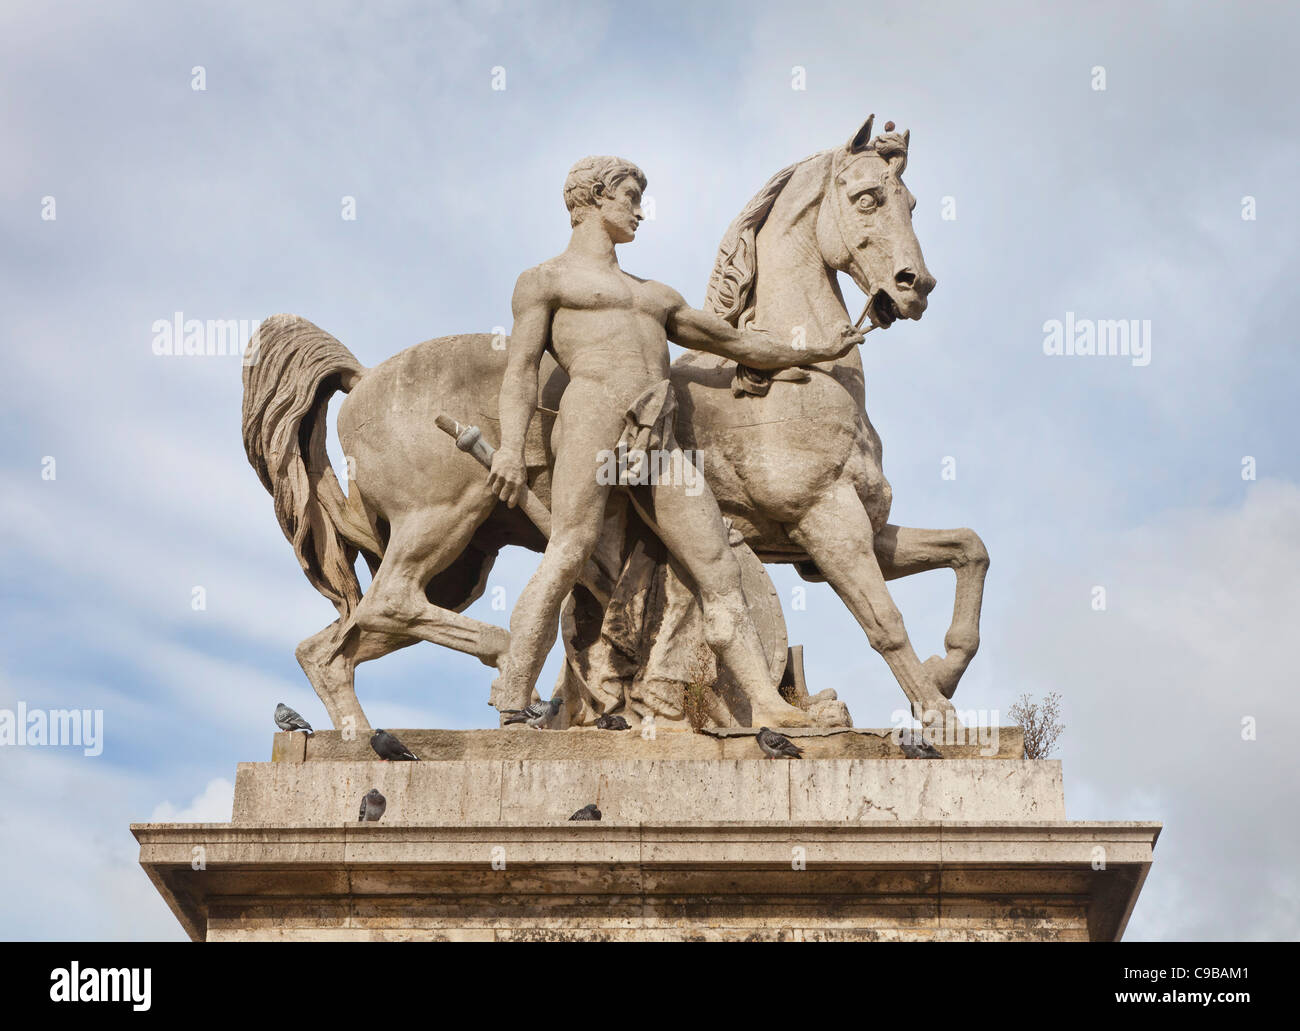 Pont d'lena pont, Paris, France, la statue d'un guerrier à cheval Banque D'Images